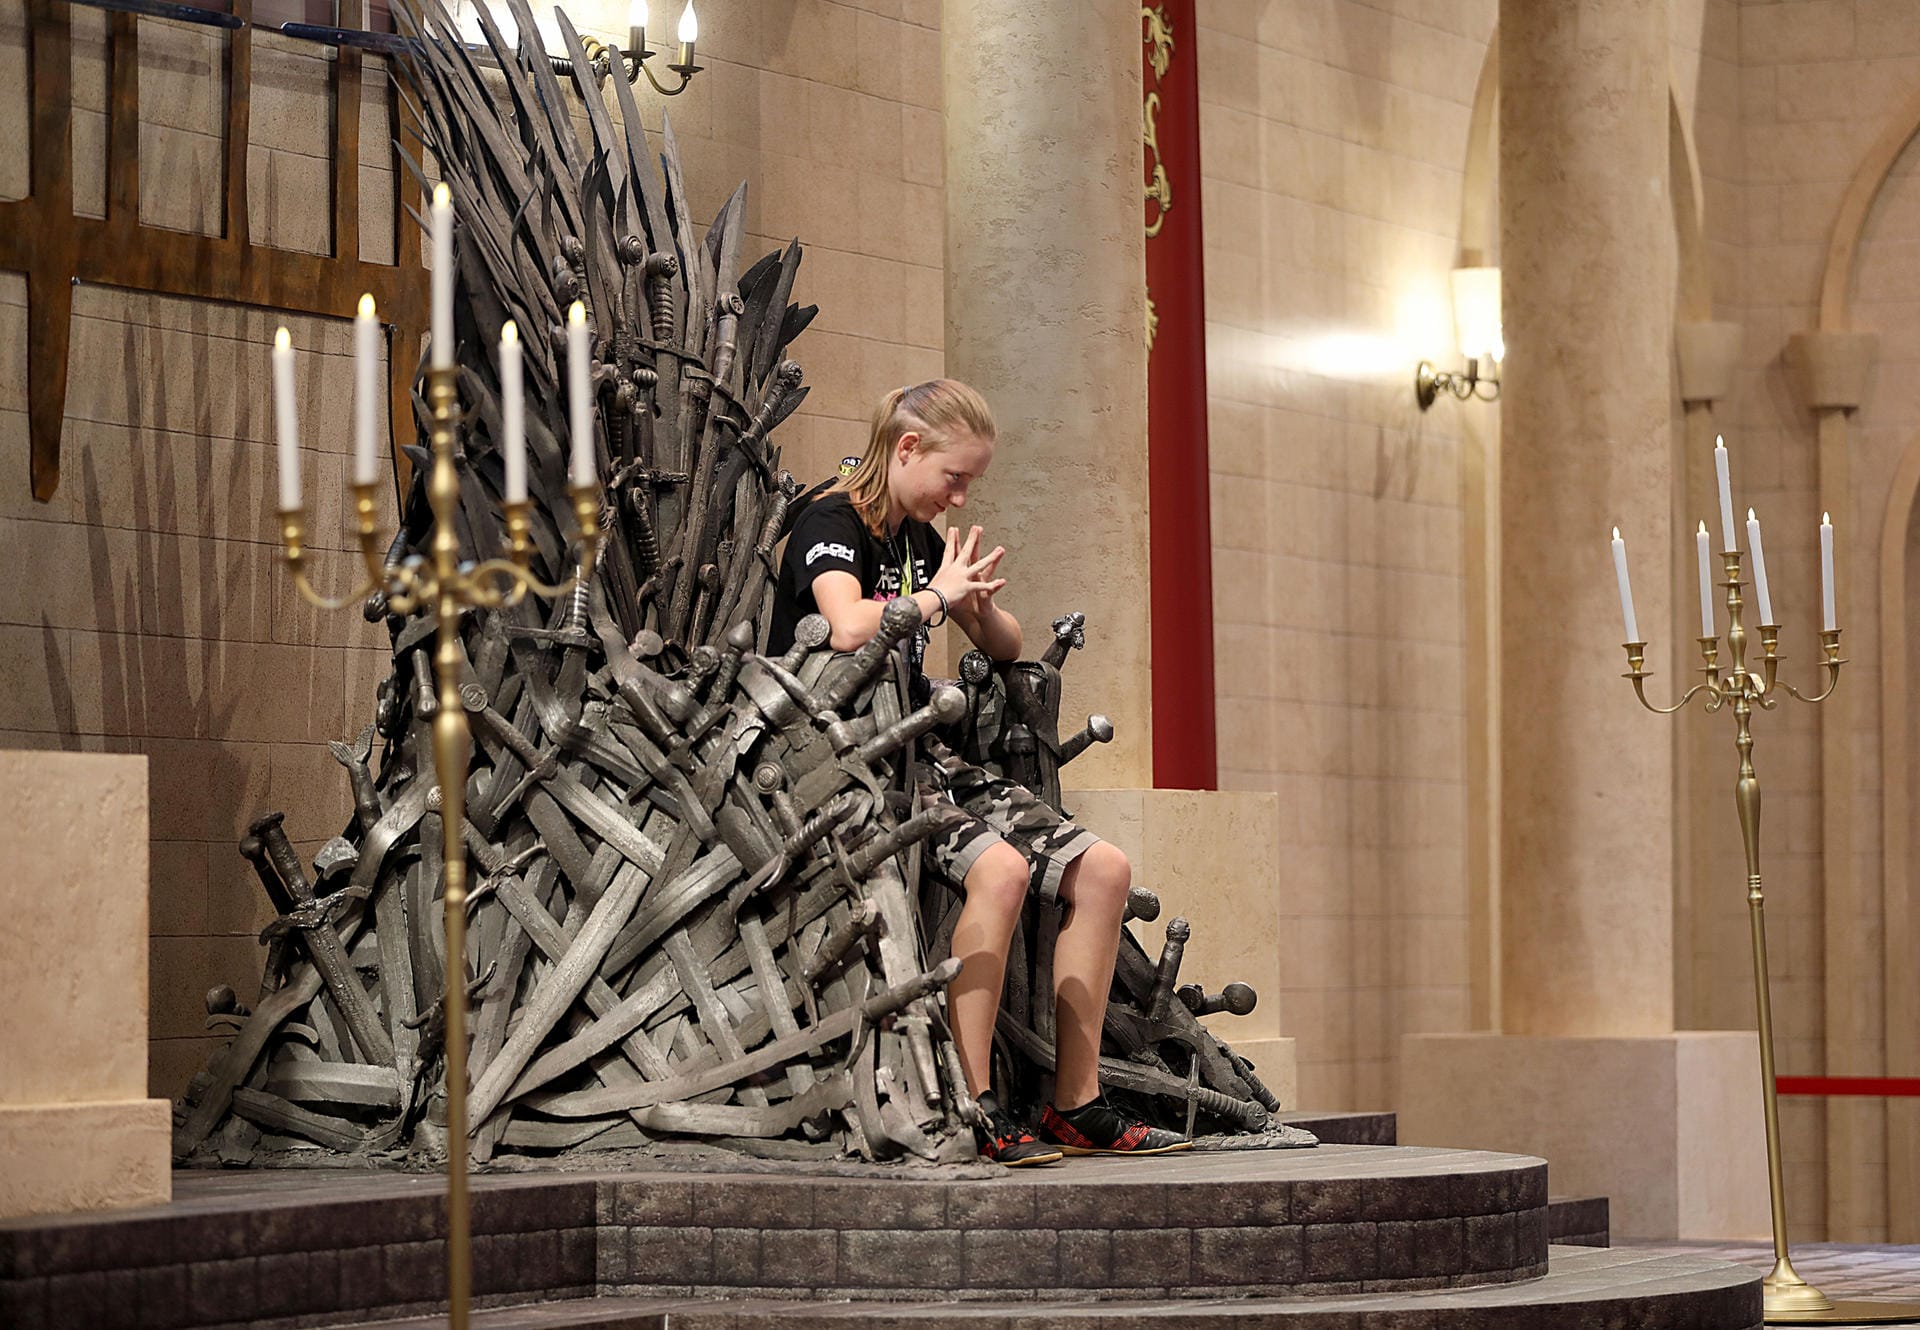 Eine Besucherin der Gamescom lässt sich auf dem Stand für das Spiel Game of Thrones des Entwicklers Cyanide Studio fotografieren.